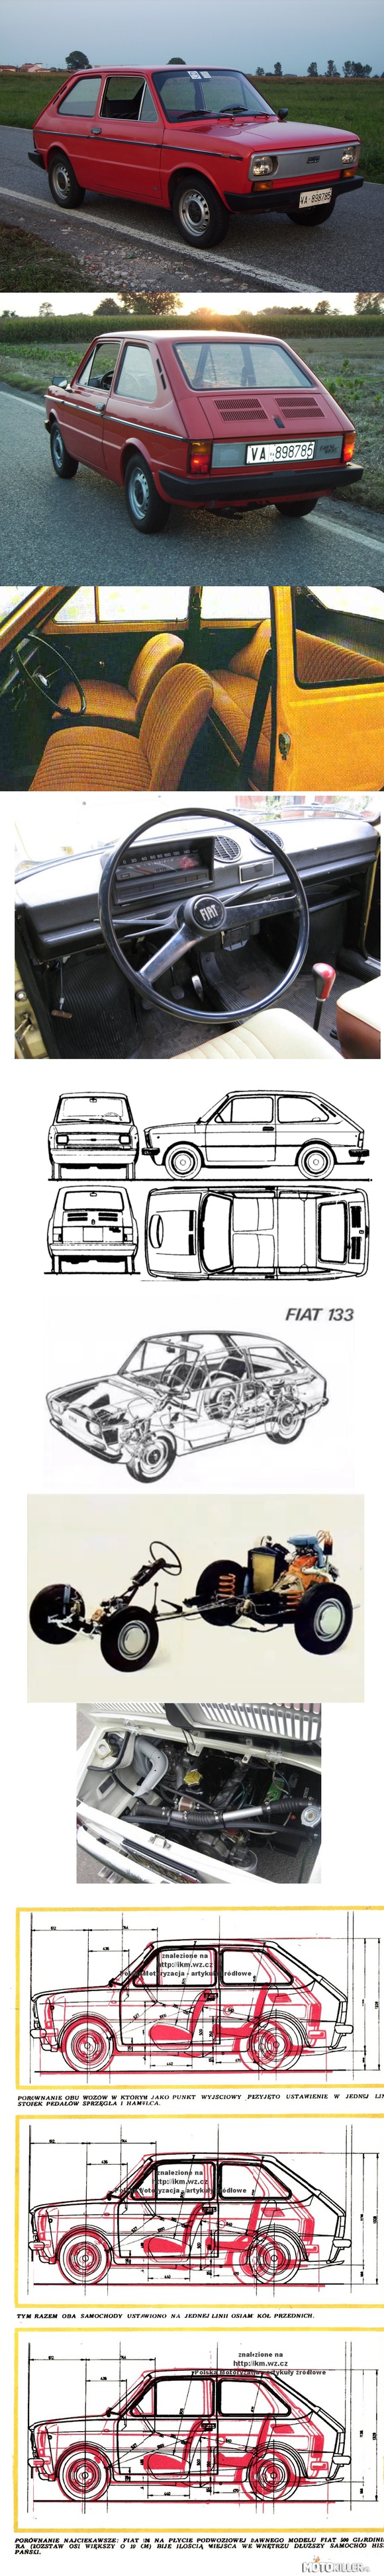 FIAT/SEAT 133 – Praktycznie nieznany w Polsce model Fiata/Seata, wyglądający jak 126 z lekką nutą 127 i 128. Wrzucam jako ciekawostkę, sam wolę 126&apos;kę
____________________________

FIAT/SEAT 133 był kompilacją stylistyczną modeli 126, 127 i 128. Technologia wytłaczania blach (kształtki, wytłoczki, przetłoczenia itd) była wspólna z modelem 127. 133 powstał jako odpowiedź na model 126. Hiszpanie bowiem odrzucili propozycję licencyjnej produkcji tego modelu. 126 nie spełniało ówczesnych wymogów hiszpańskich kierowców. SEAT wciąż produkował model 600 oraz 850. W salonach można było kupić importowane Fiaty 500 jednak nie sprzedawały się tam dość dobrze. Decyzja ta wynikła również z tego, że SEAT nigdy nie produkował modelu 500. 126 jakkolwiek nieco większe w istocie było Fiatem 500 w nieco innej &quot;skórce&quot;. Projekt modelu 126 jednak bardzo podobał się inżynierom SEAT-a. Podobał się również potencjalnym nabywcom. Zapadła zatem decyzja o stworzeniu własnego konceptu o stylistyce 126 jednak sporo większego (wymiary prawie jak 127). Gotowa była płyta podłogowa Fiat/SEAT 850. Sporo nowocześniejsza i lepsza od platformy 500/126 choć podobna konstrukcyjnie. Zaprojektowano zatem nowe nadwozie. Inżynierom Fiata tak się spodobał ten model, że sprzedawano to auto pod marką Fiat np. w Niemczech i Belgii. Jako Fiat 133 był też produkowany w Argentynie do 1985 roku. Tam też powstała usportowiona wersja IAVA. Miała silnik o pojemności 903 cm³ i mocy maksymalnej 50 KM, czterobiegową skrzynię biegów oraz obniżone zawieszenie i tarczowe hamulce przednie z modelu Fiat 850 Spider. Prędkość maksymalna wynosiła około 133 km/h. Fiat/SEAT 133 produkowany był również w egipskich zakładach El Nasr do 1994 roku. 